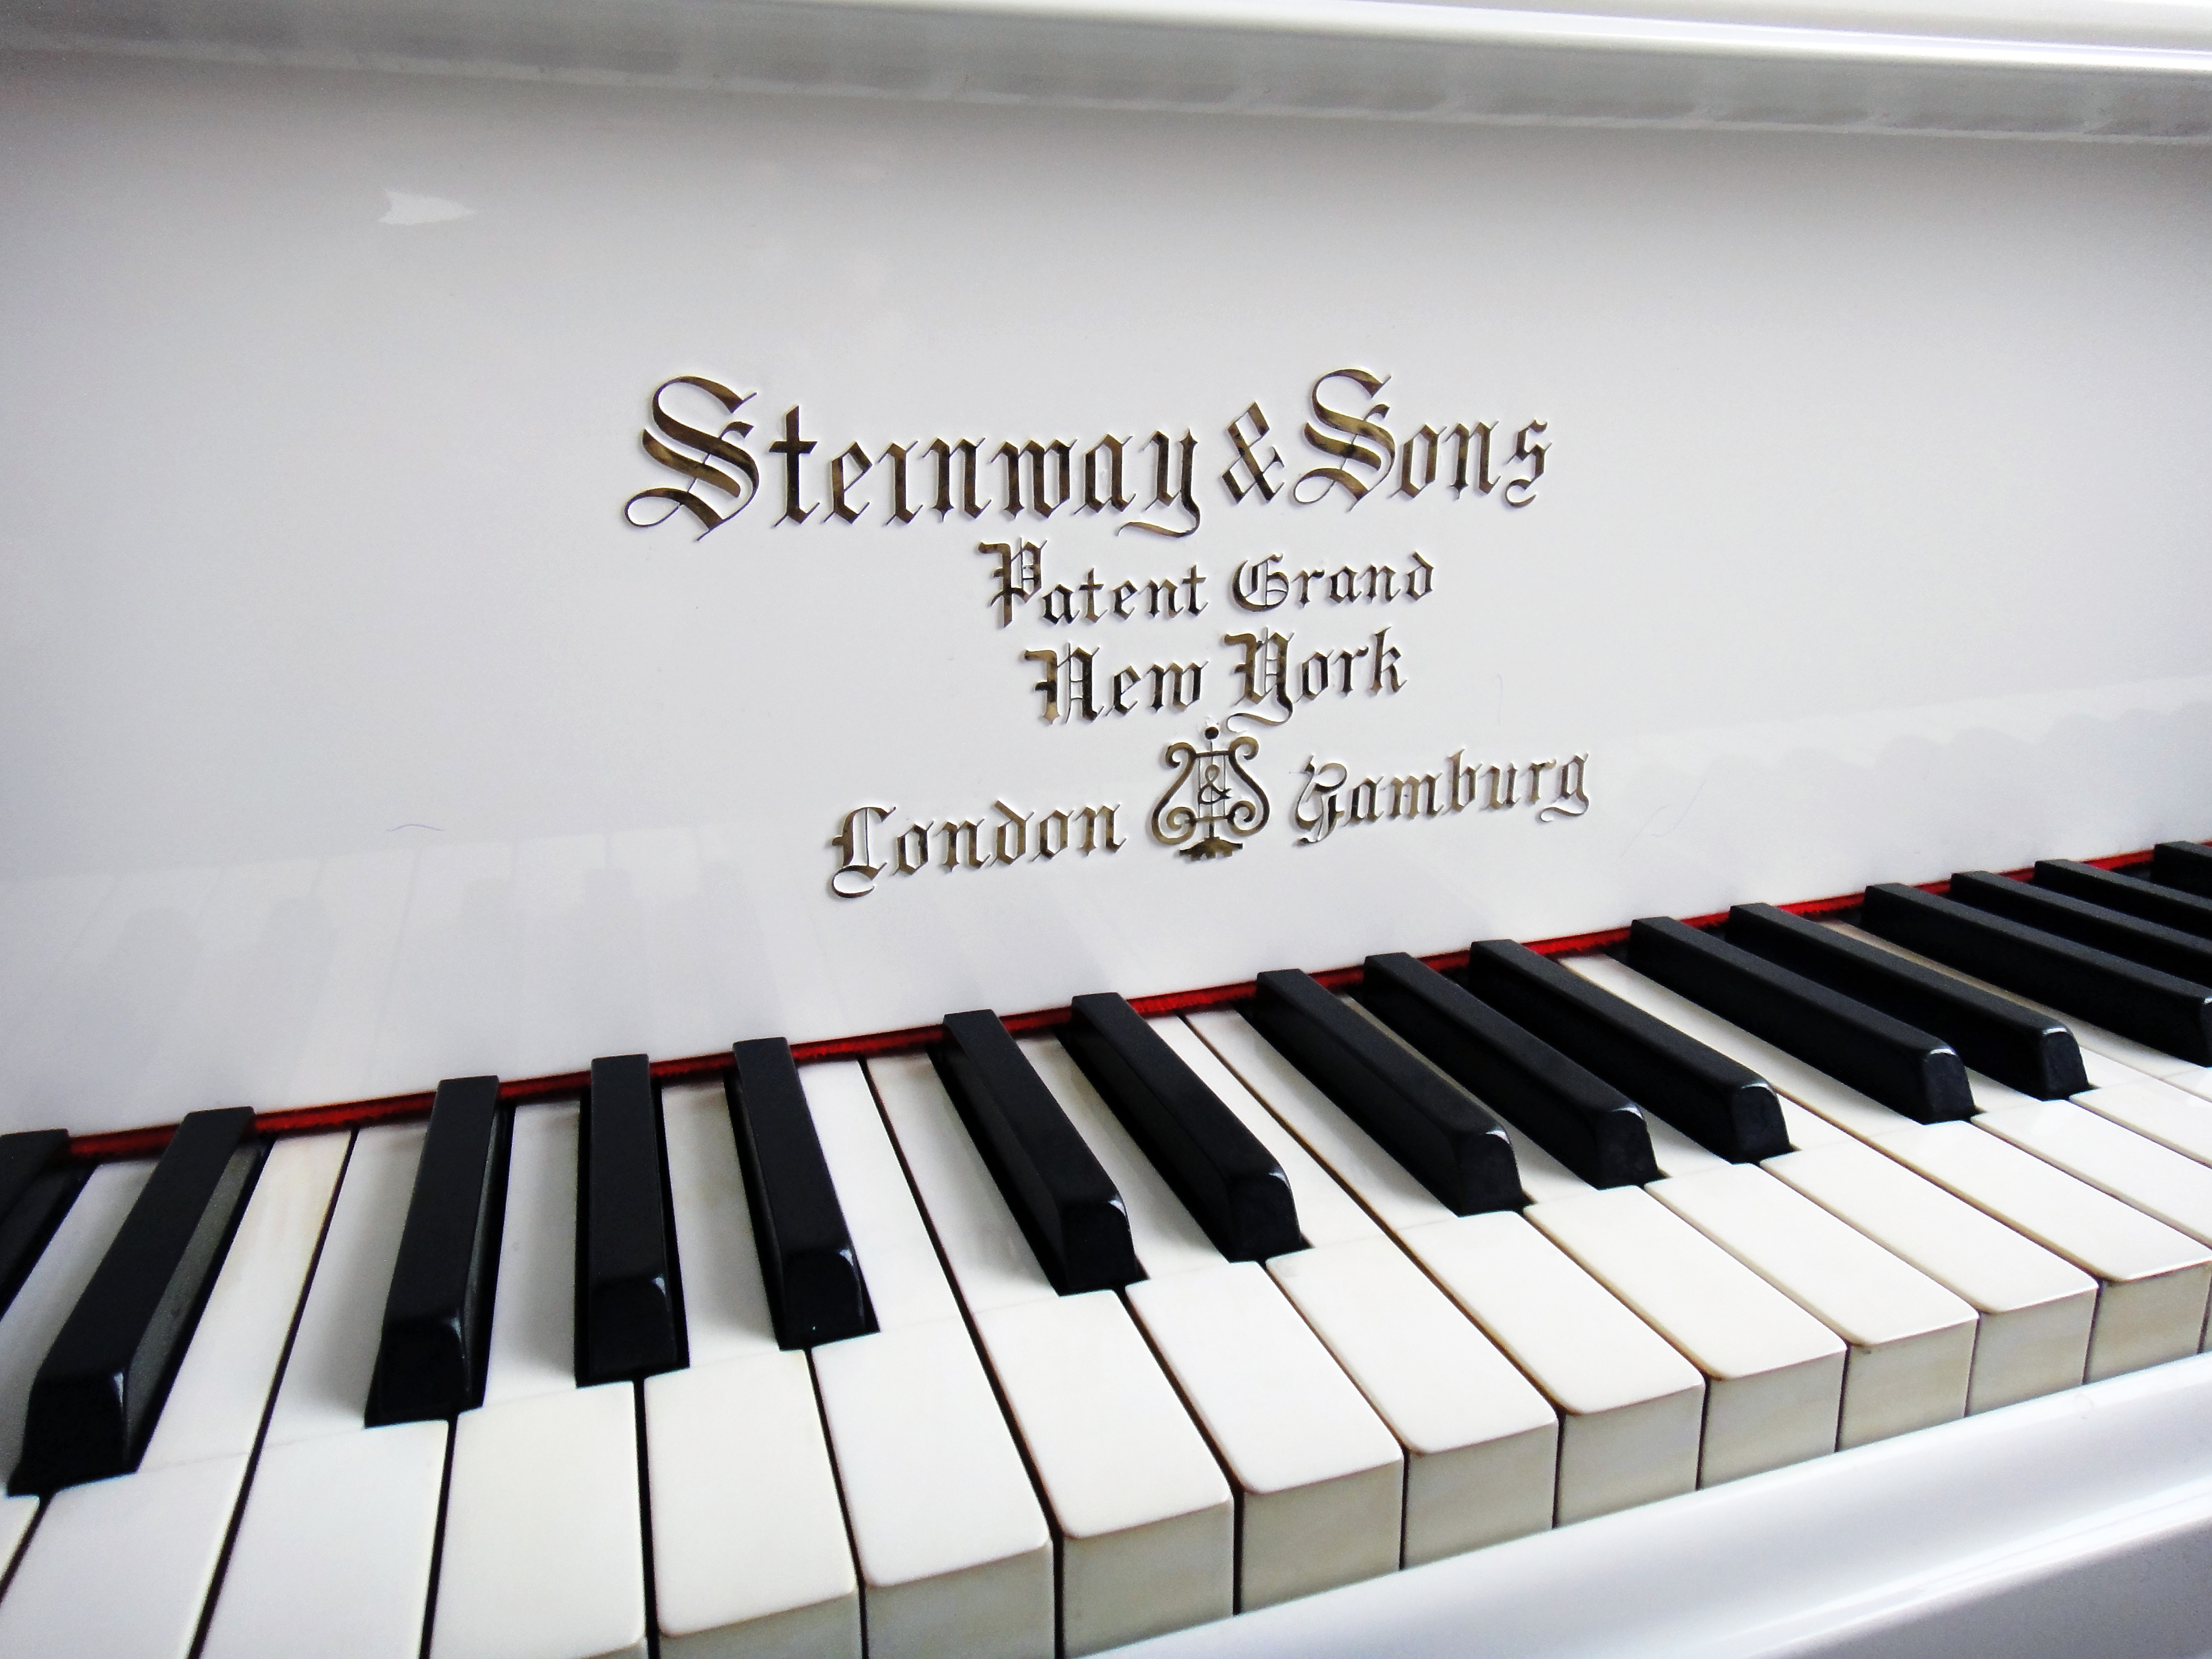 Стейнвей и сыновья, патентованный рояль, Нью-Йорк, Лондон, Гамбург